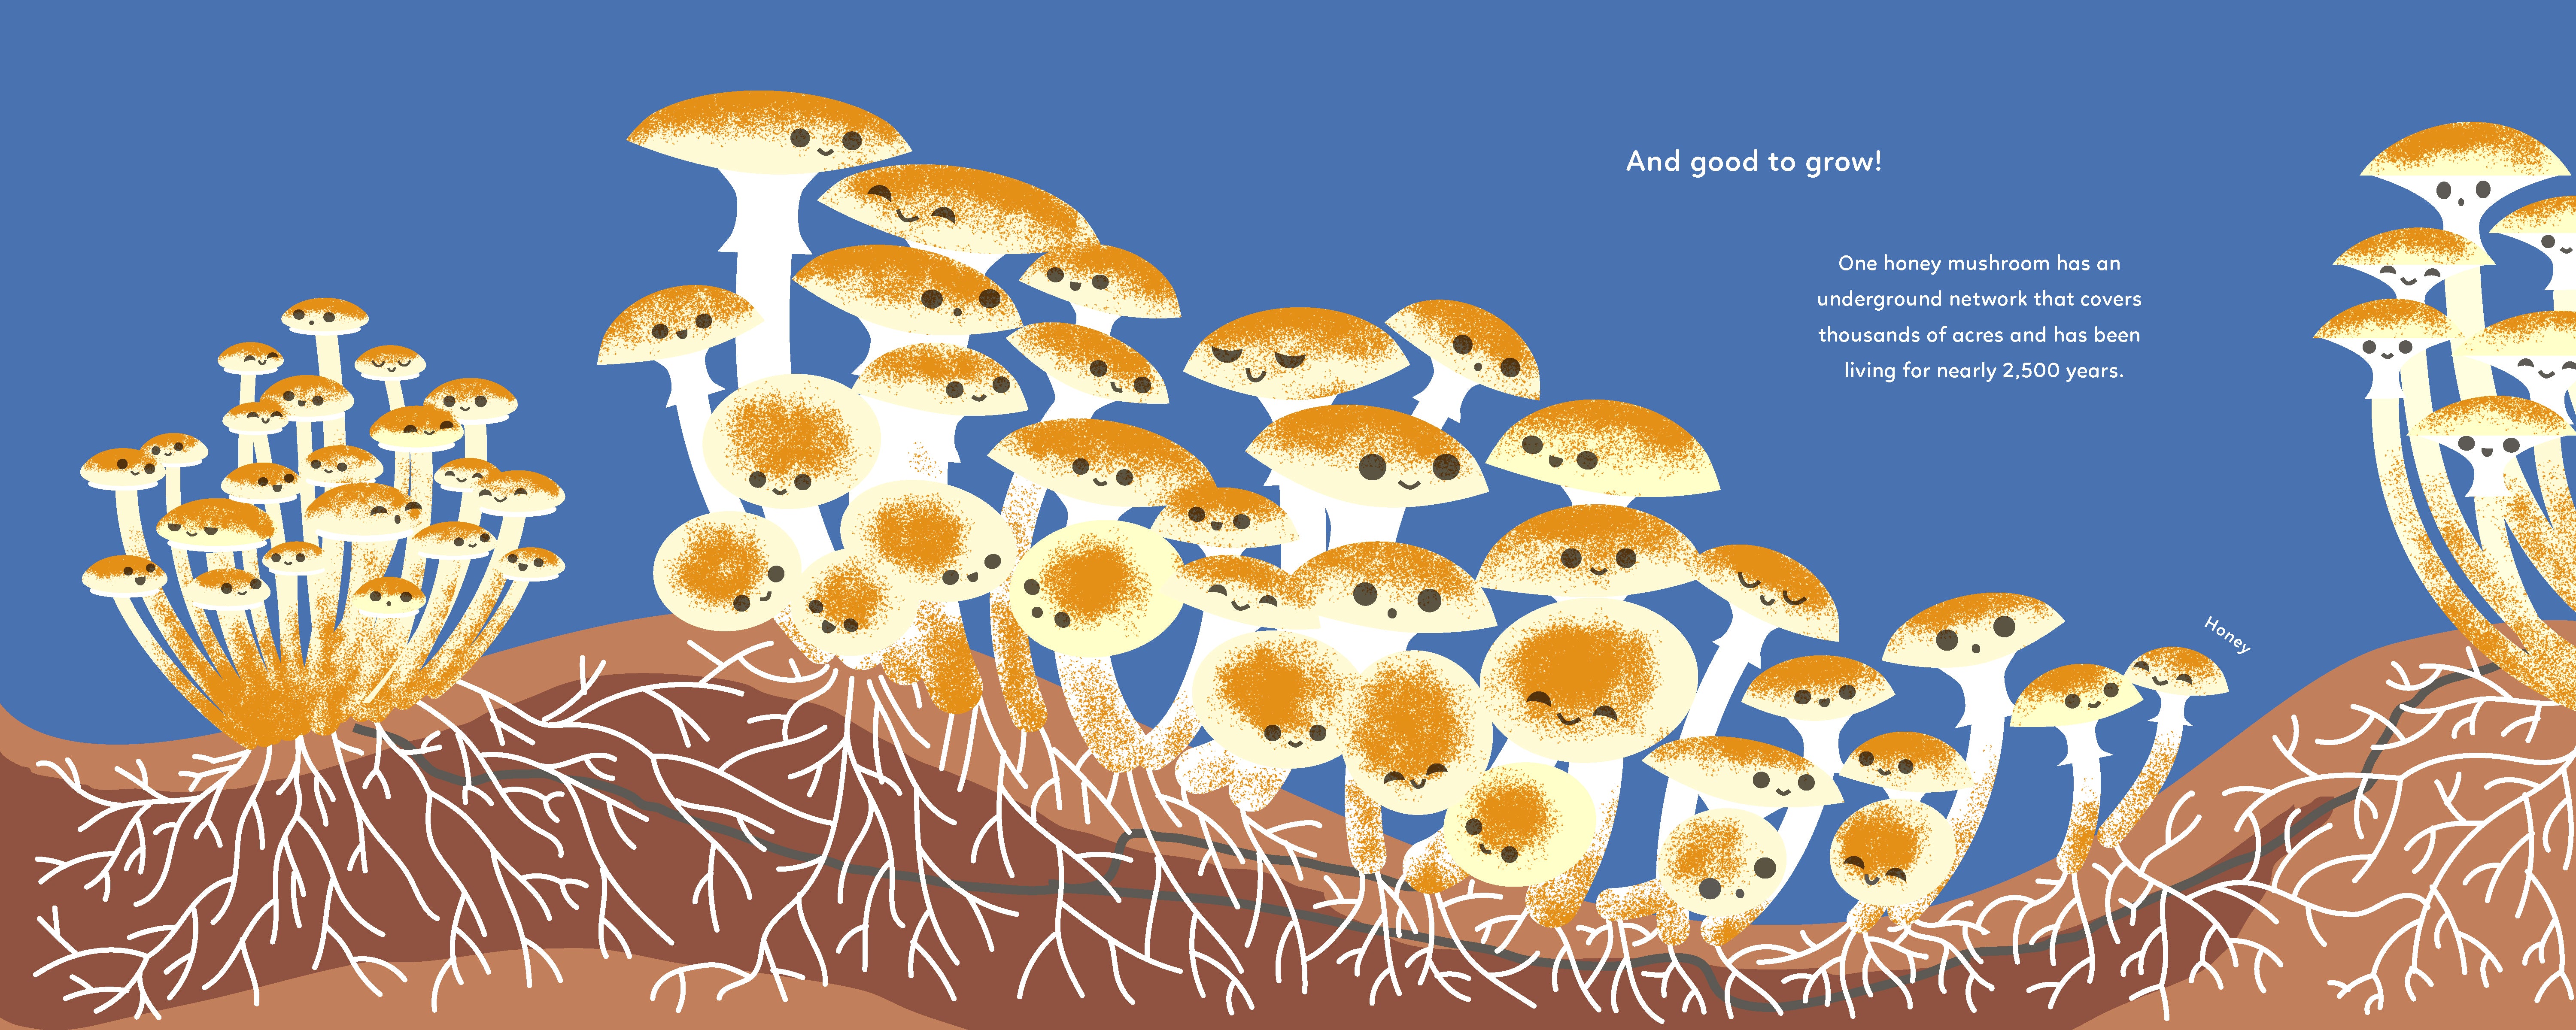 Mushrooms Know